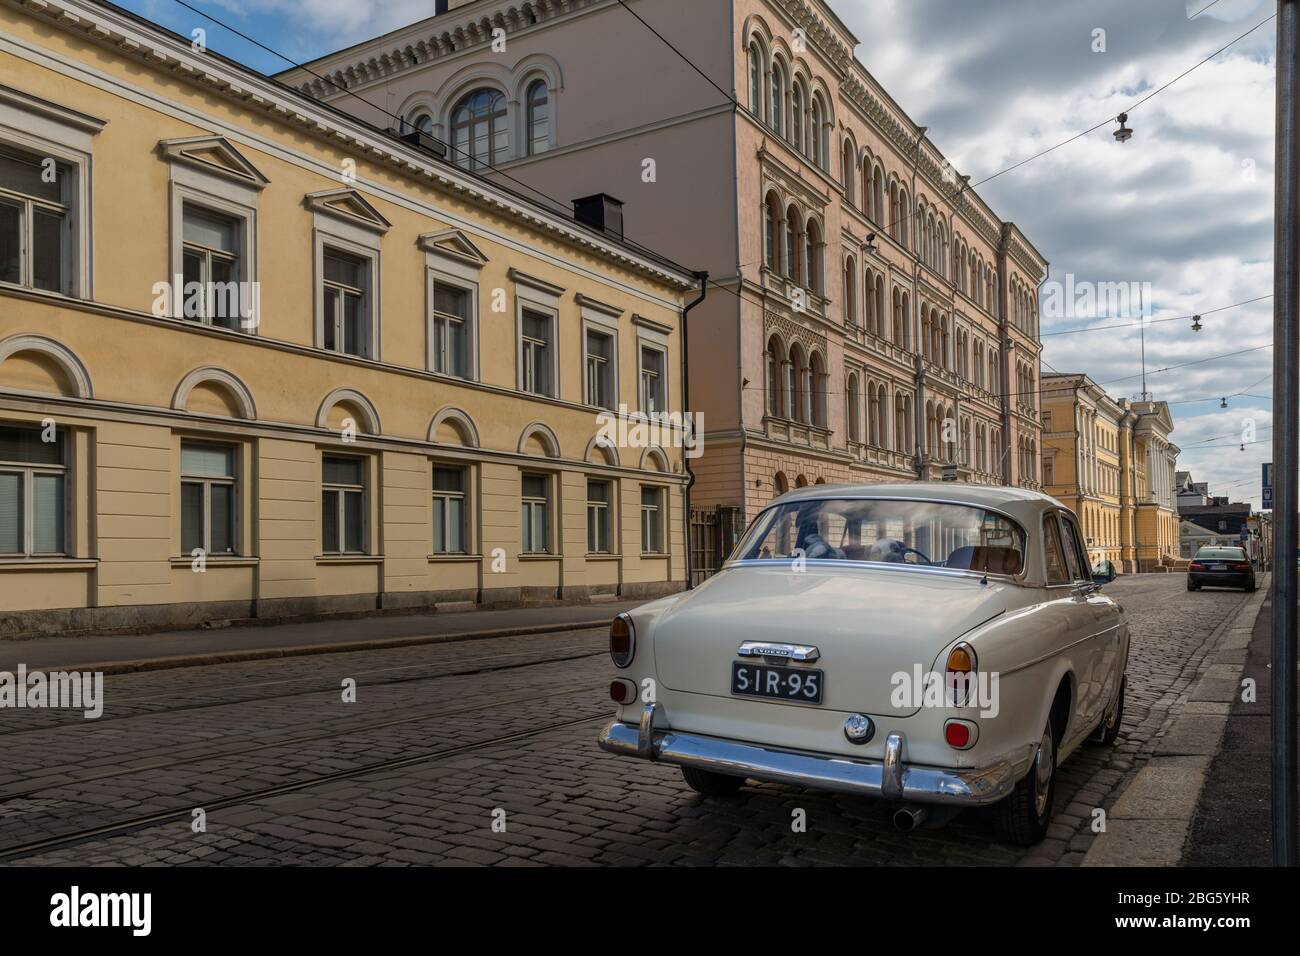 L'architettura vicino alla Piazza del Senato di Helsinki è stata influenzata dall'architettura russa. La vista della strada potrebbe essere da San Pietroburgo. Foto Stock